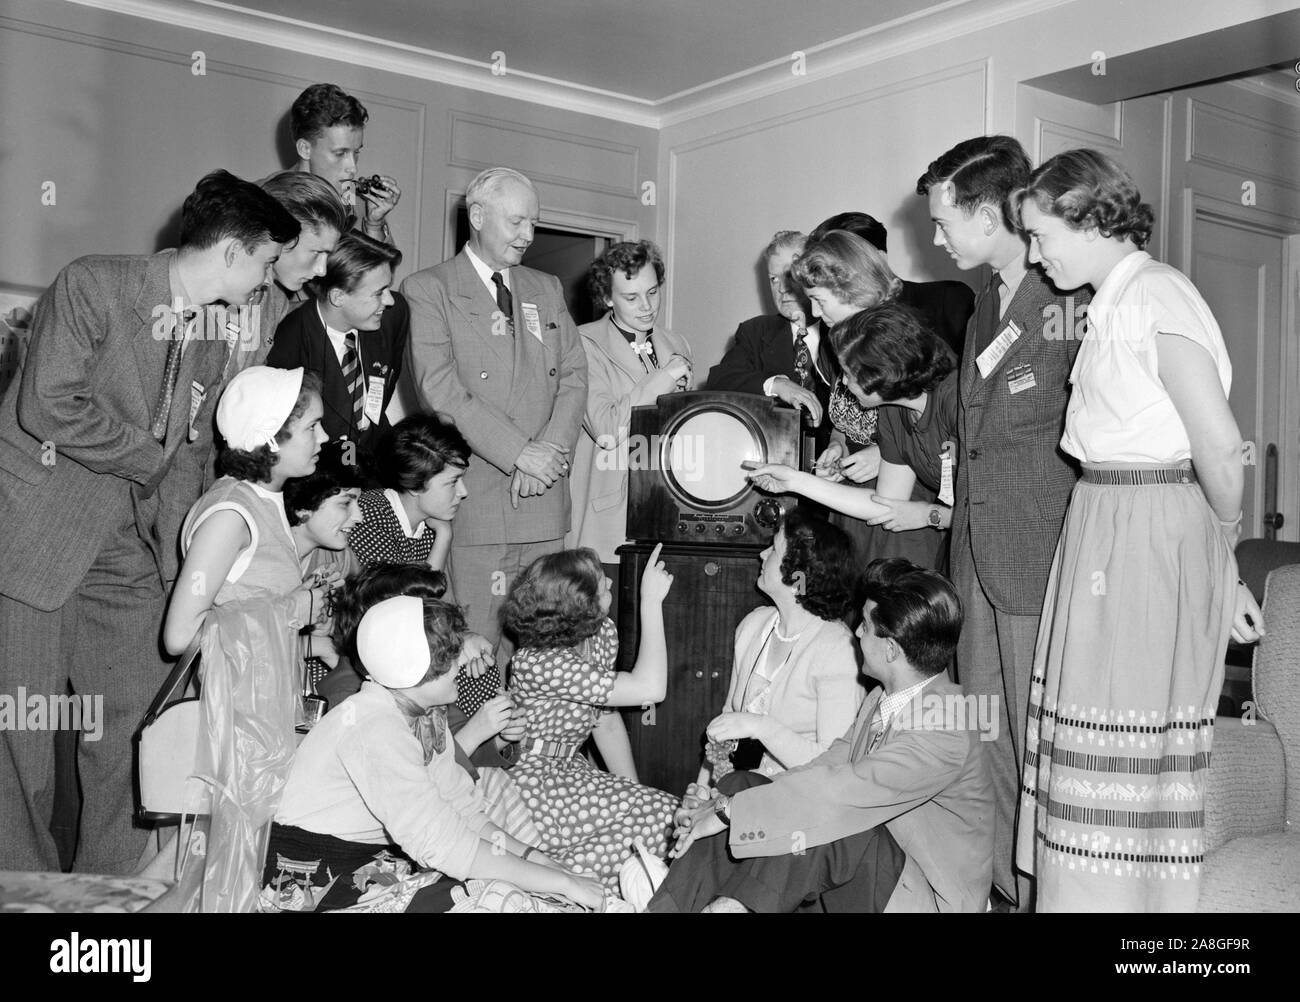 Les jeunes du pays de l'Europe groupe gratuitement check out a new American television pendant leur tour de Chicago, ca. 1950. Banque D'Images